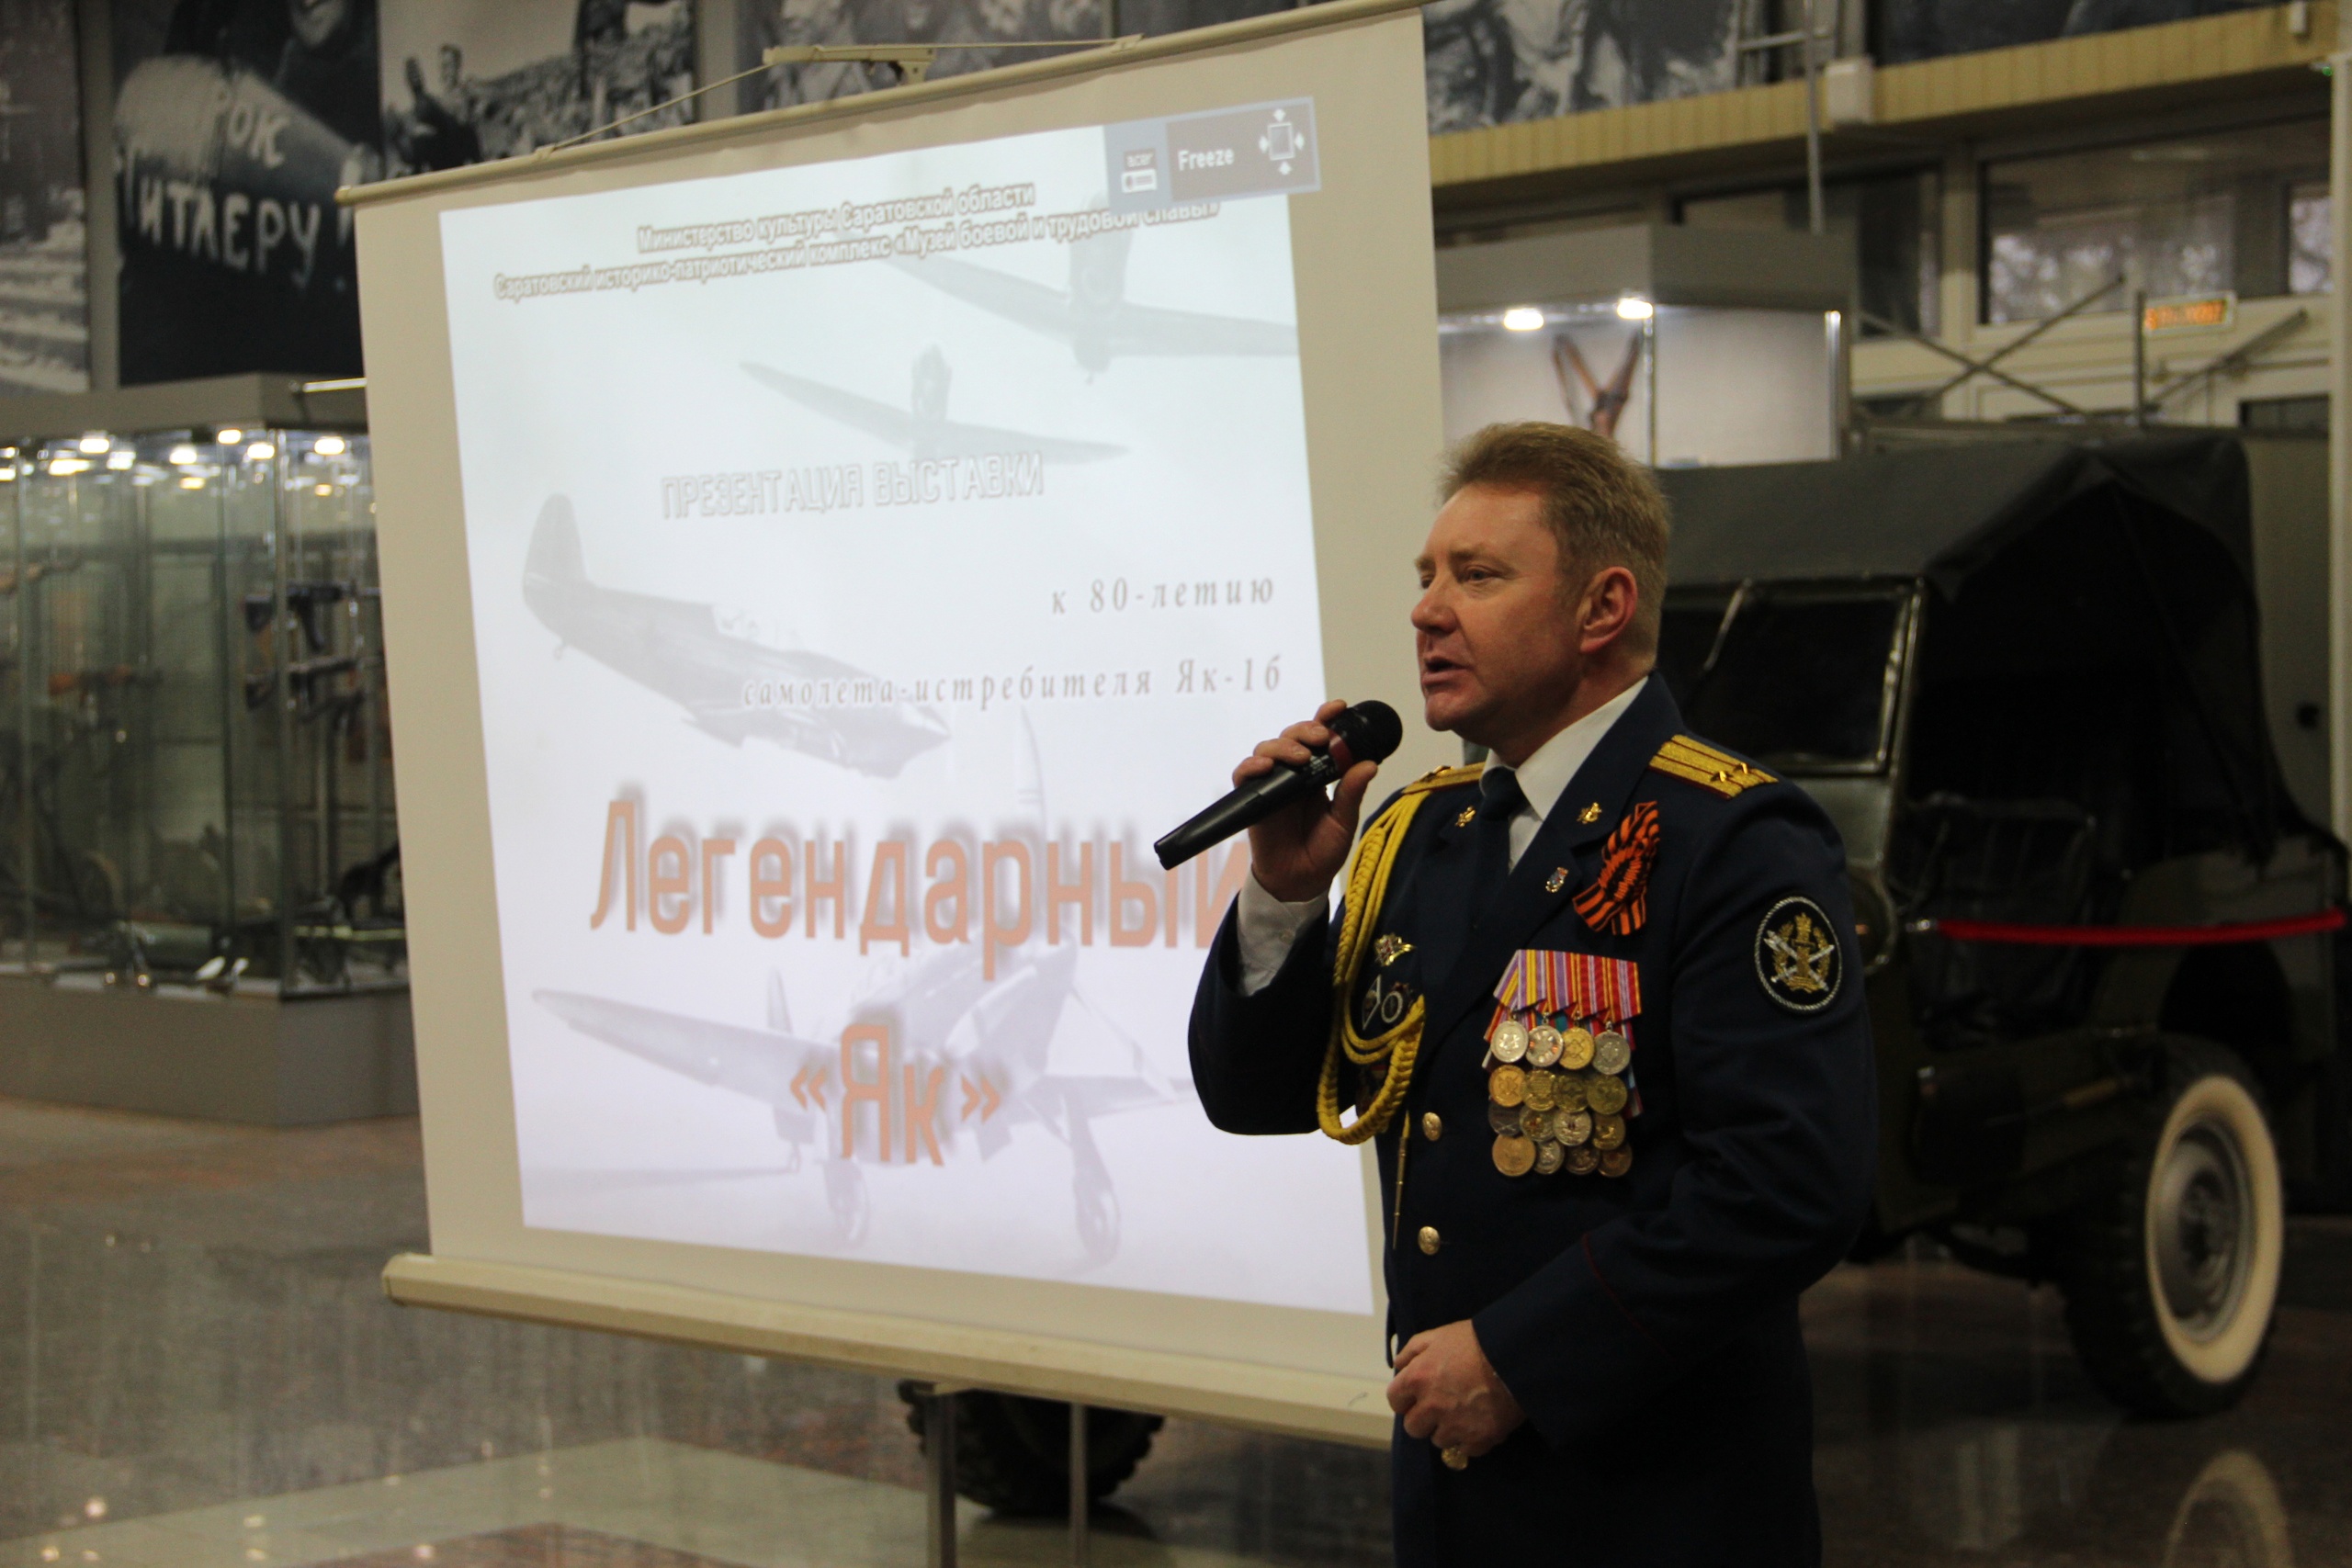 Презентация выставки к 80-летию юбилея самолета — истребителя Як-1б